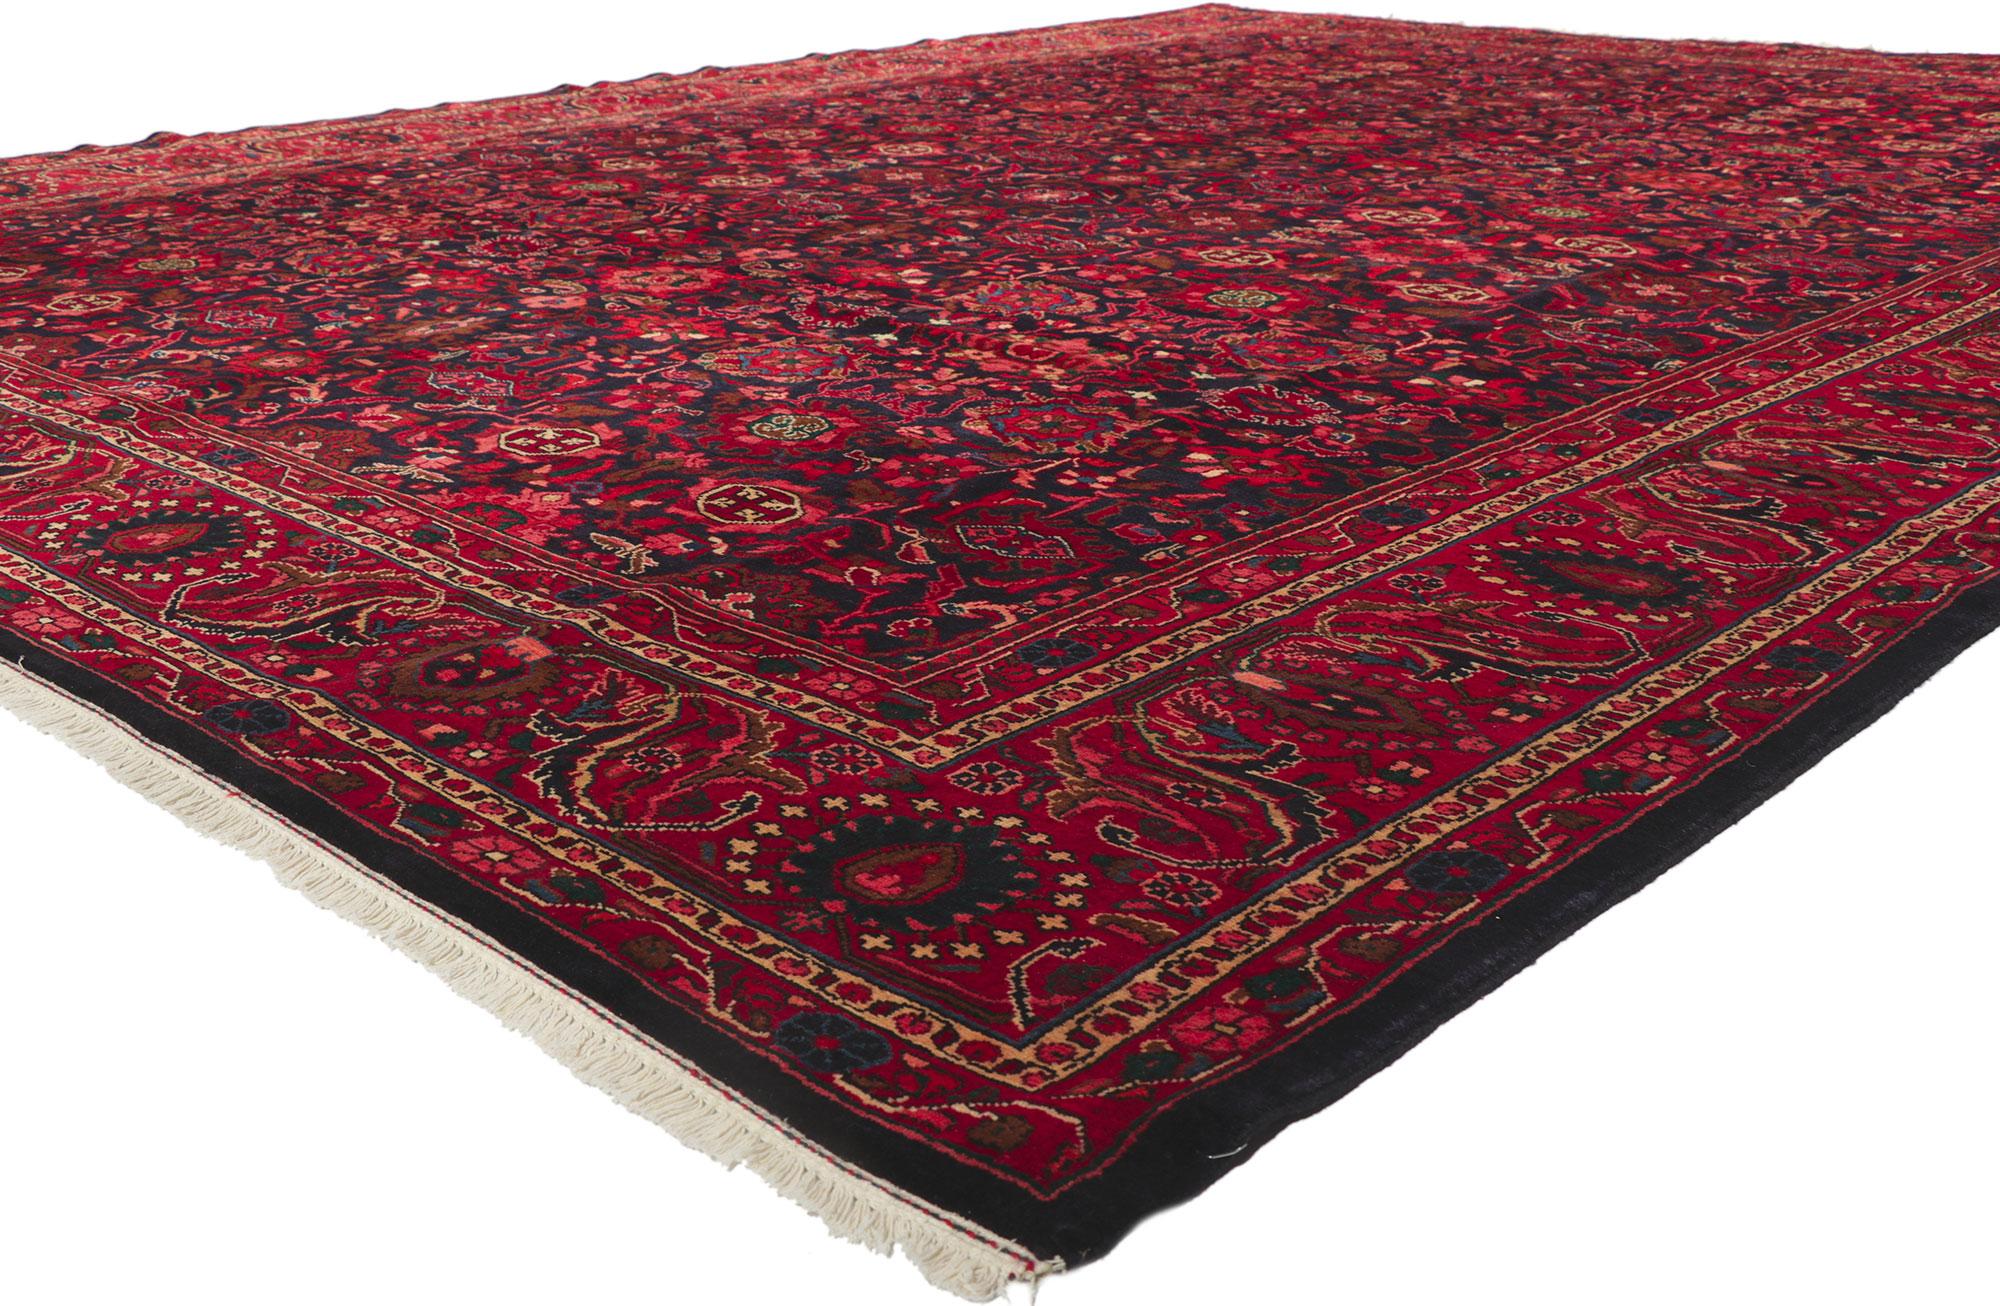 61197 Vintage Persischer Malayer Teppich, 11'03 x 14'06. Mit seinem zeitlosen Design und seiner betörenden Schönheit in satten Farben ist dieser handgeknüpfte persische Malayer-Teppich aus Wolle im Vintage-Stil ein echter Hingucker. Ein sich allover